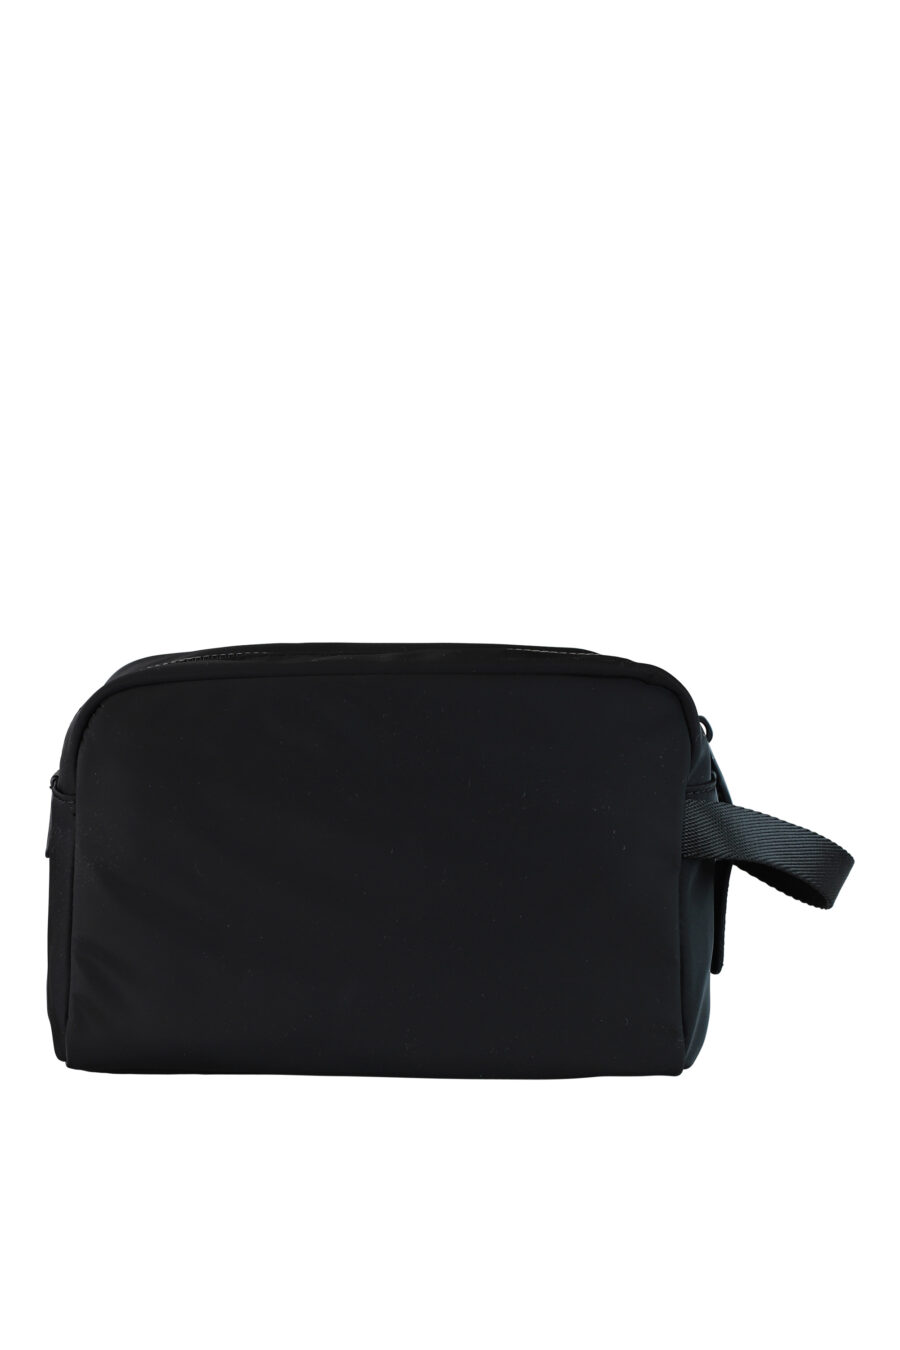 Toilet bag black with monochrome logo - IMG 0404